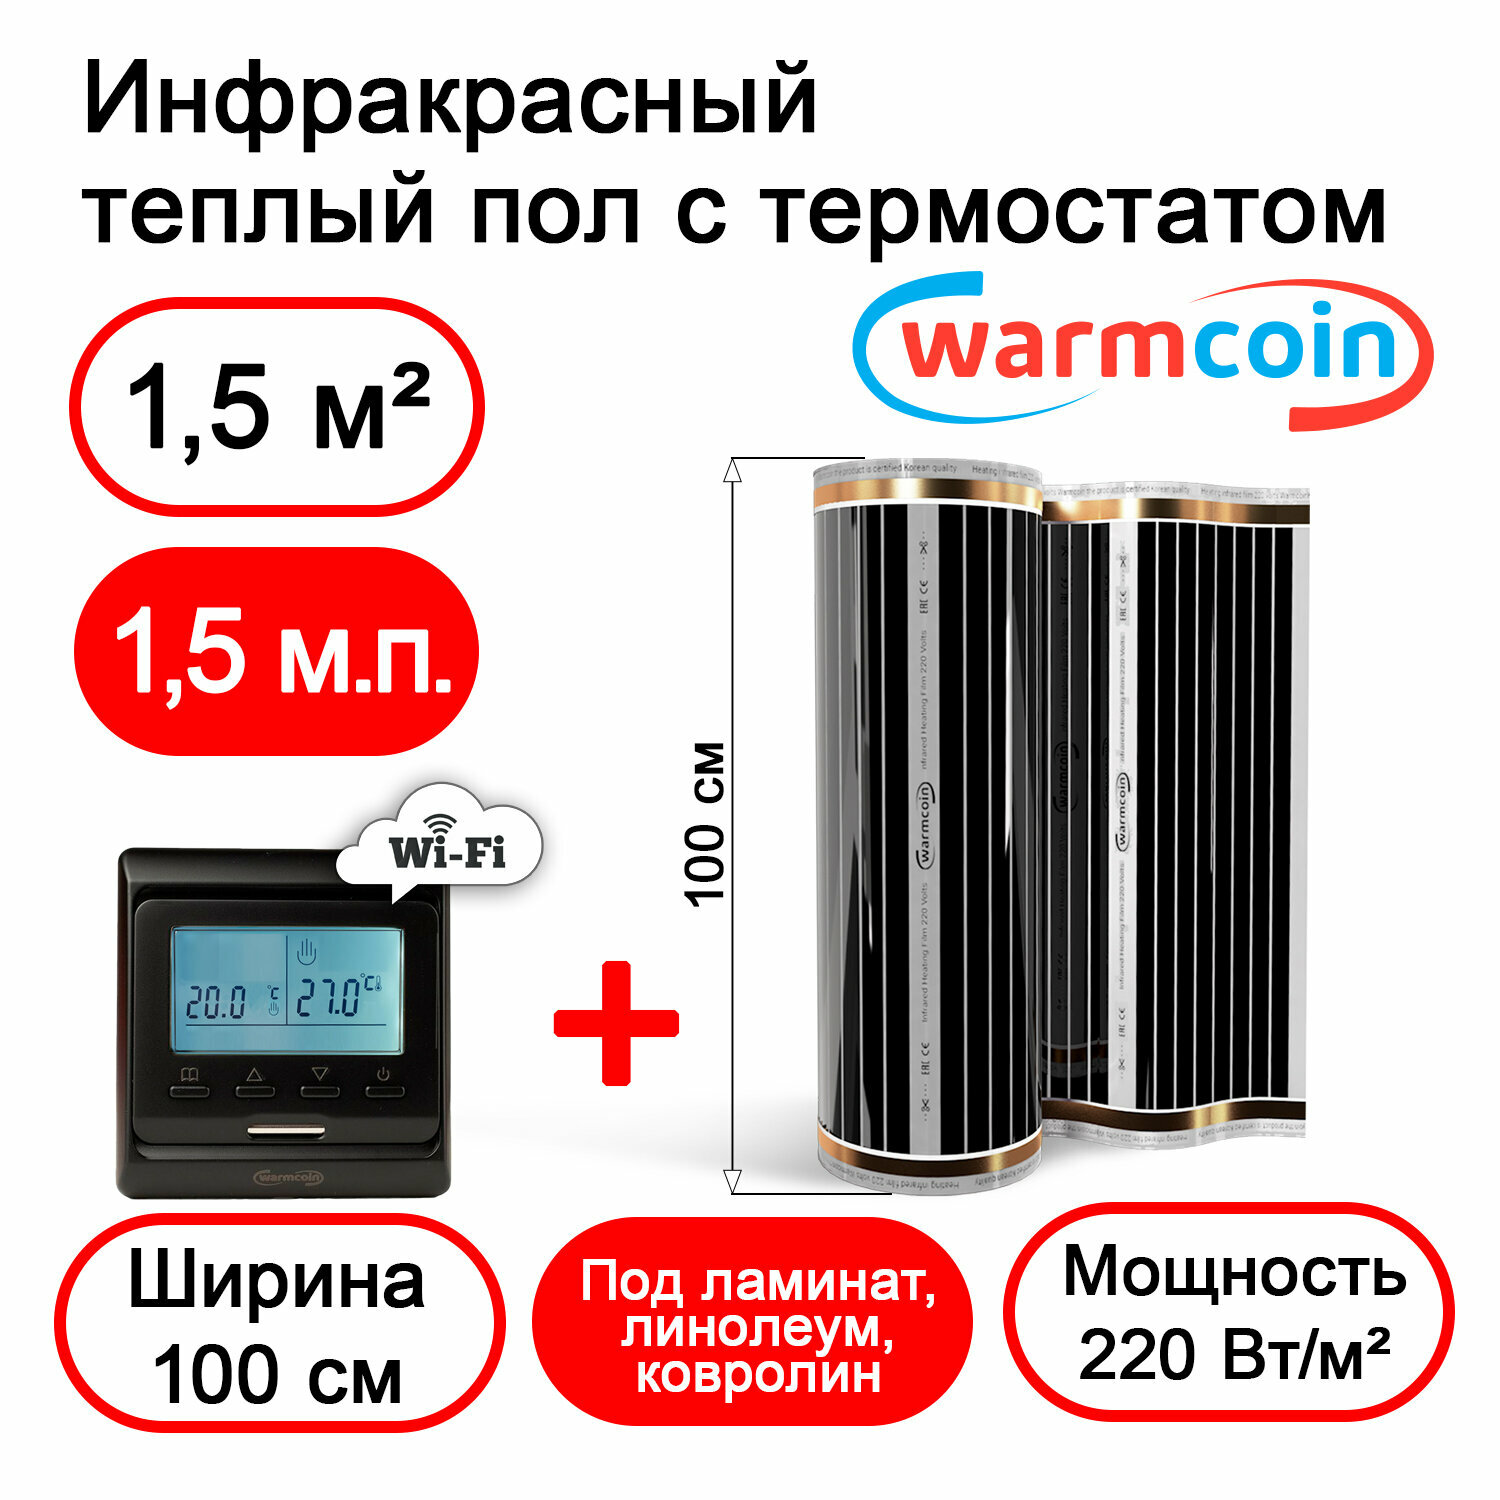 Теплый пол Warmcoin инфракрасный 100 см, 220 Вт/м. кв. с черным терморегулятором Wi-Fi, 1,5м. п.